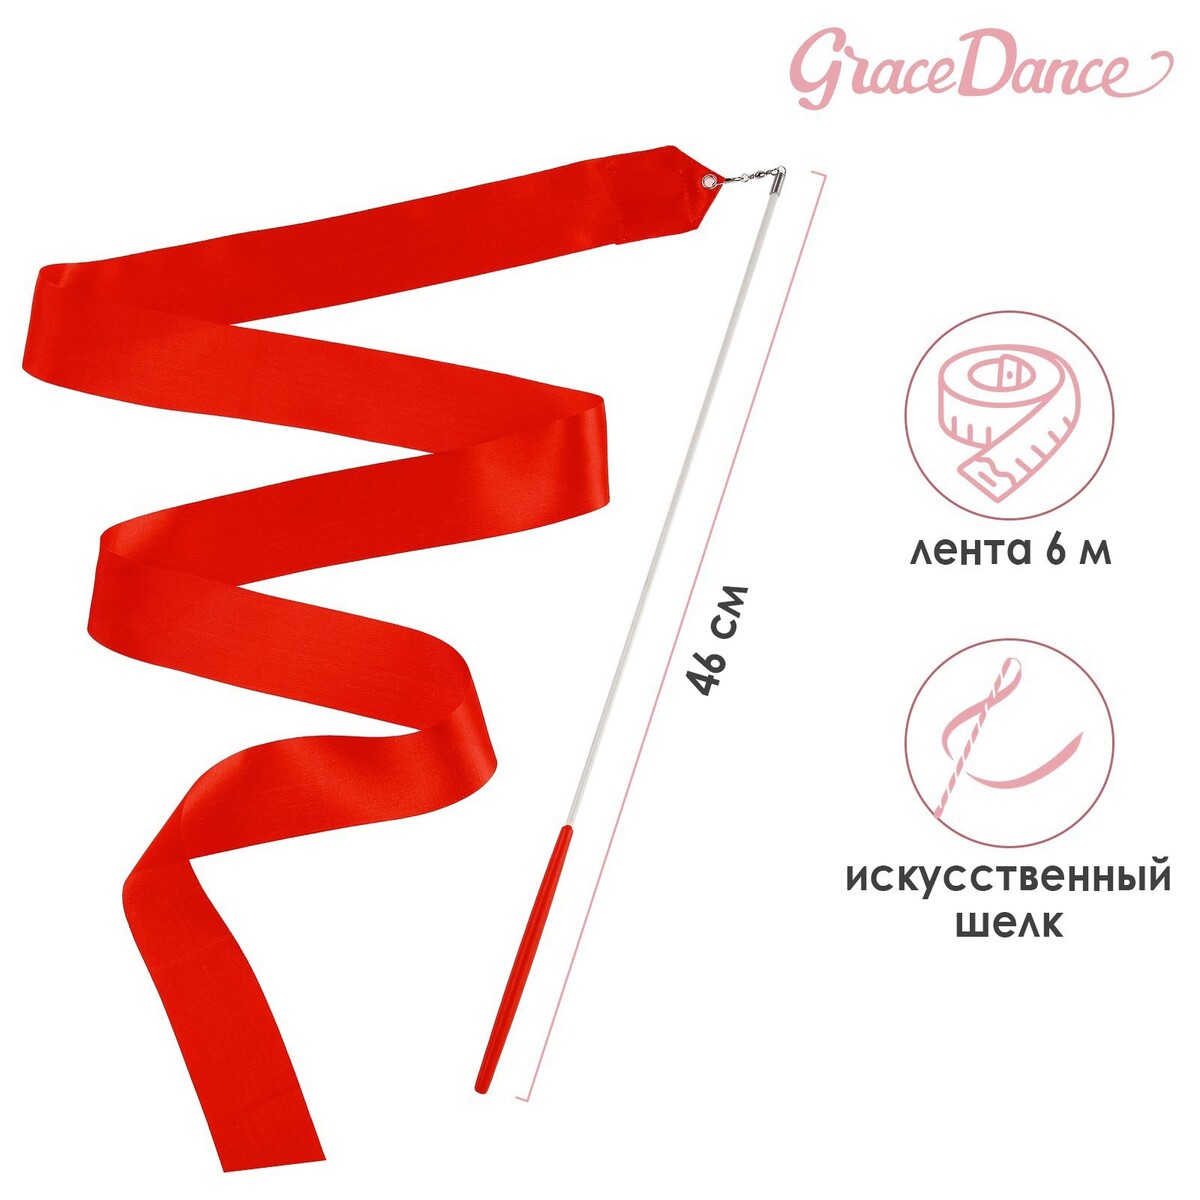 Лента для художественной гимнастики с палочкой grace dance, 6 м, цвет красный наклейка держите дистанцию 1 5 метра 200 200 ламинация красный